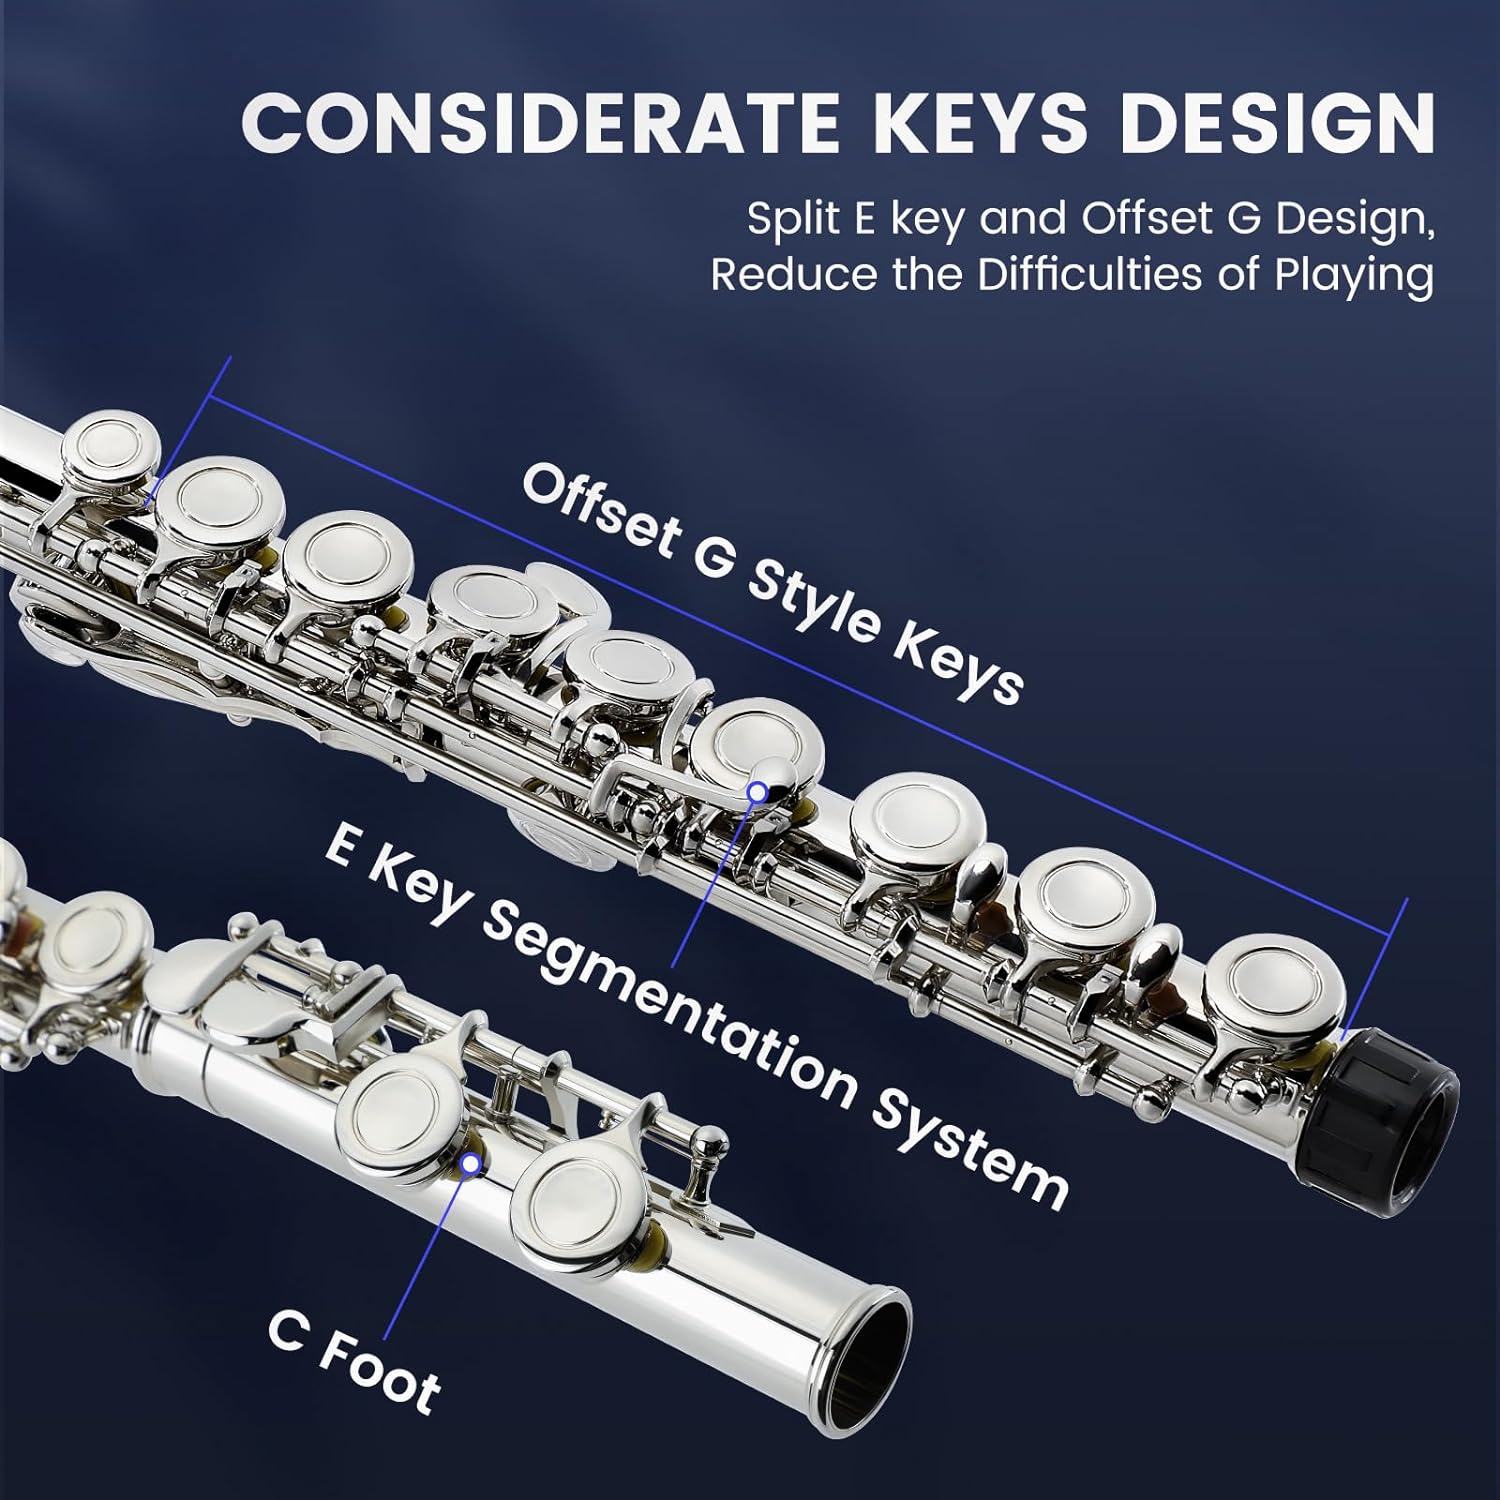 Fesley 16 Keys C Flute Instrument-Nickel